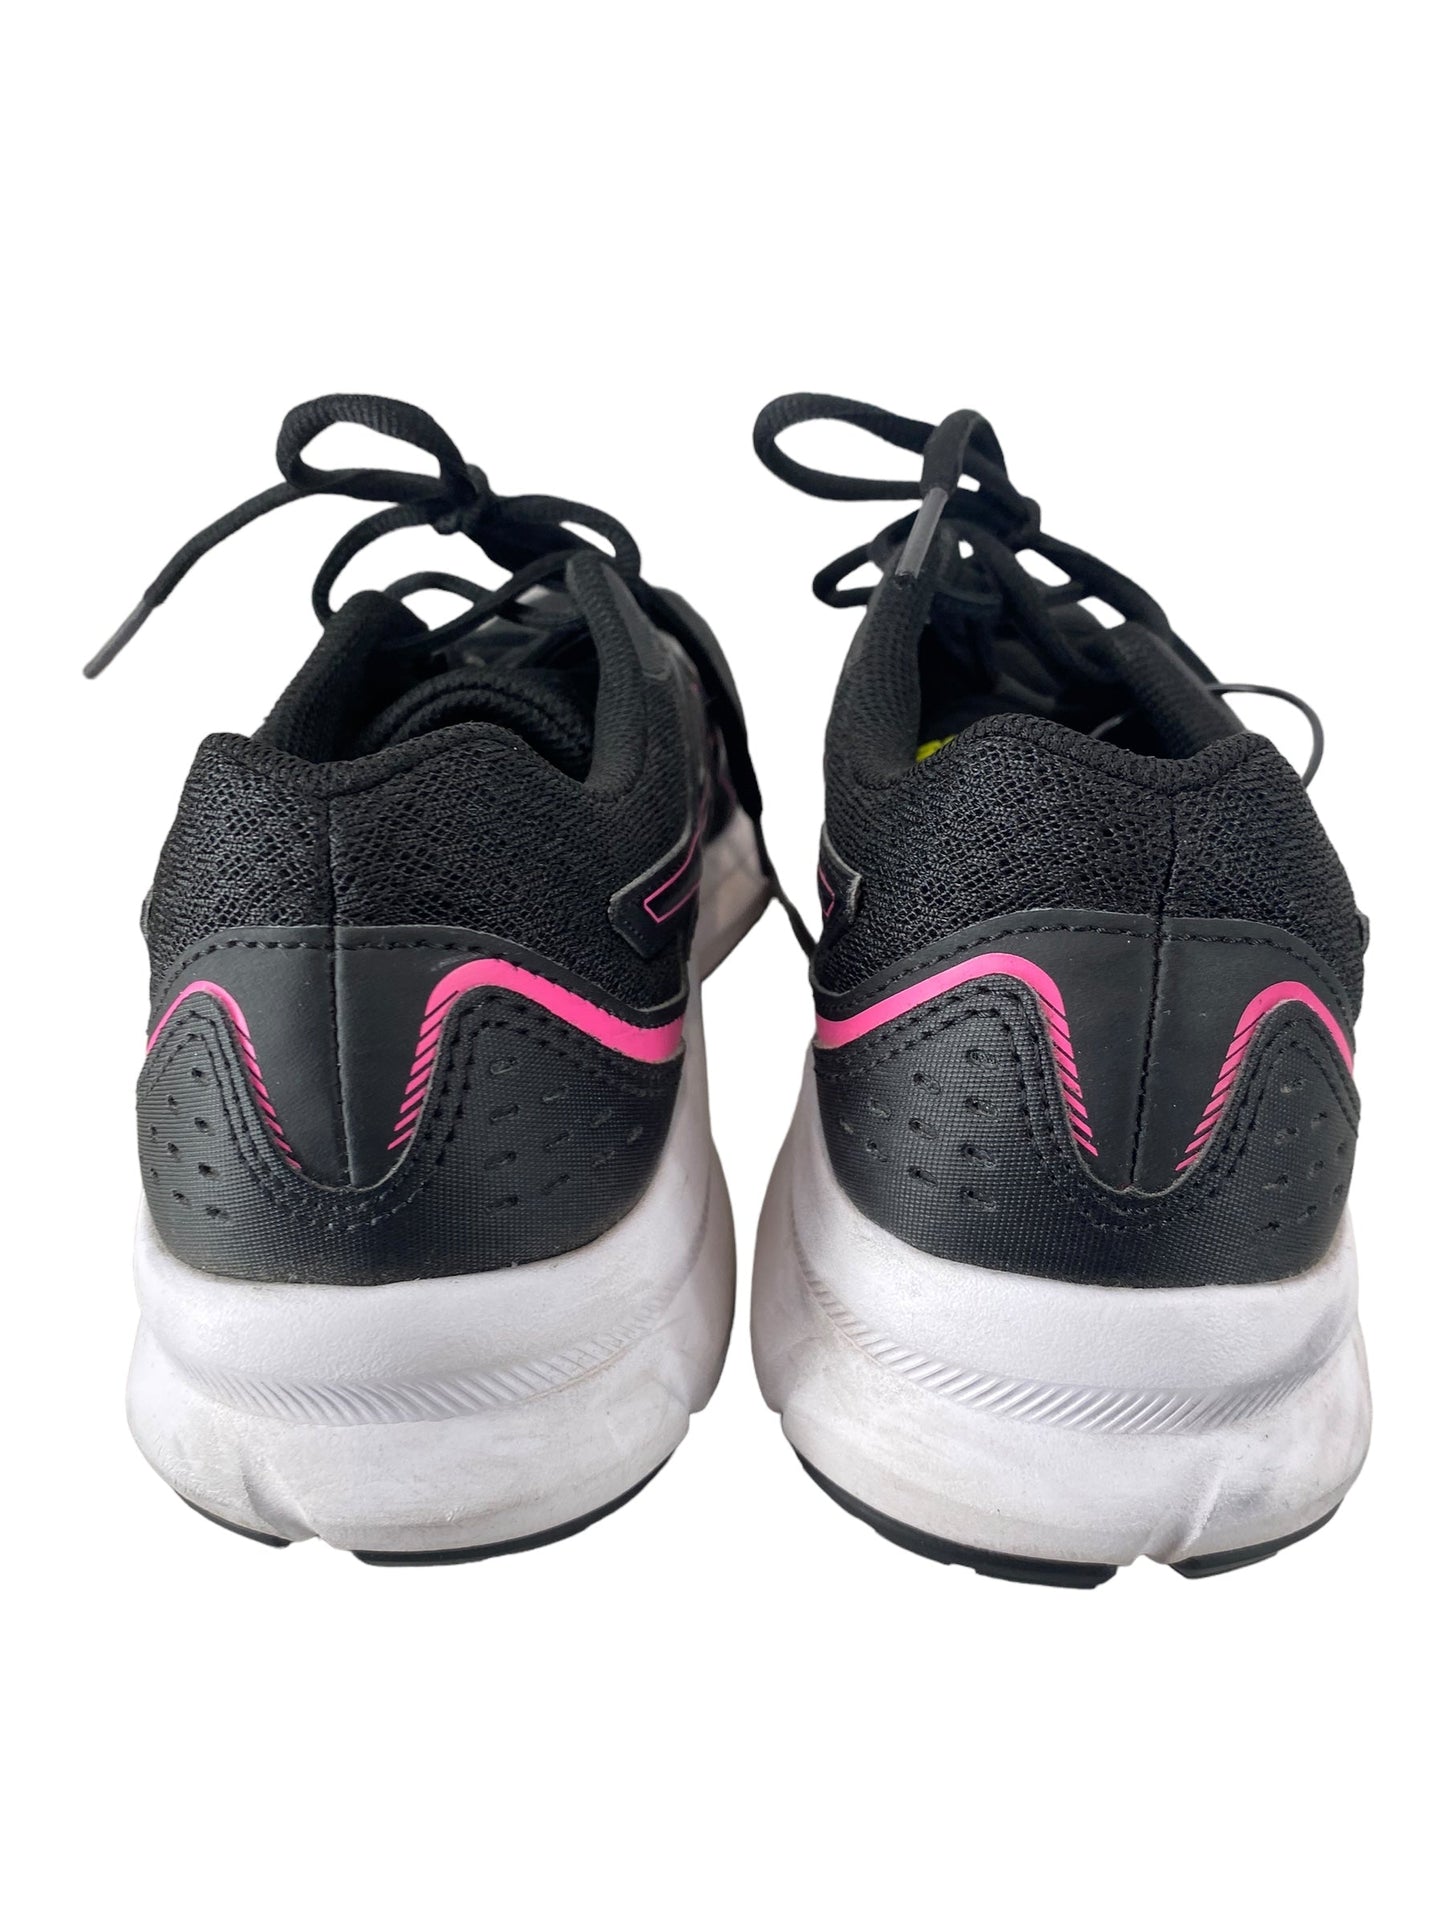 Black Shoes Athletic Asics, Size 8.5